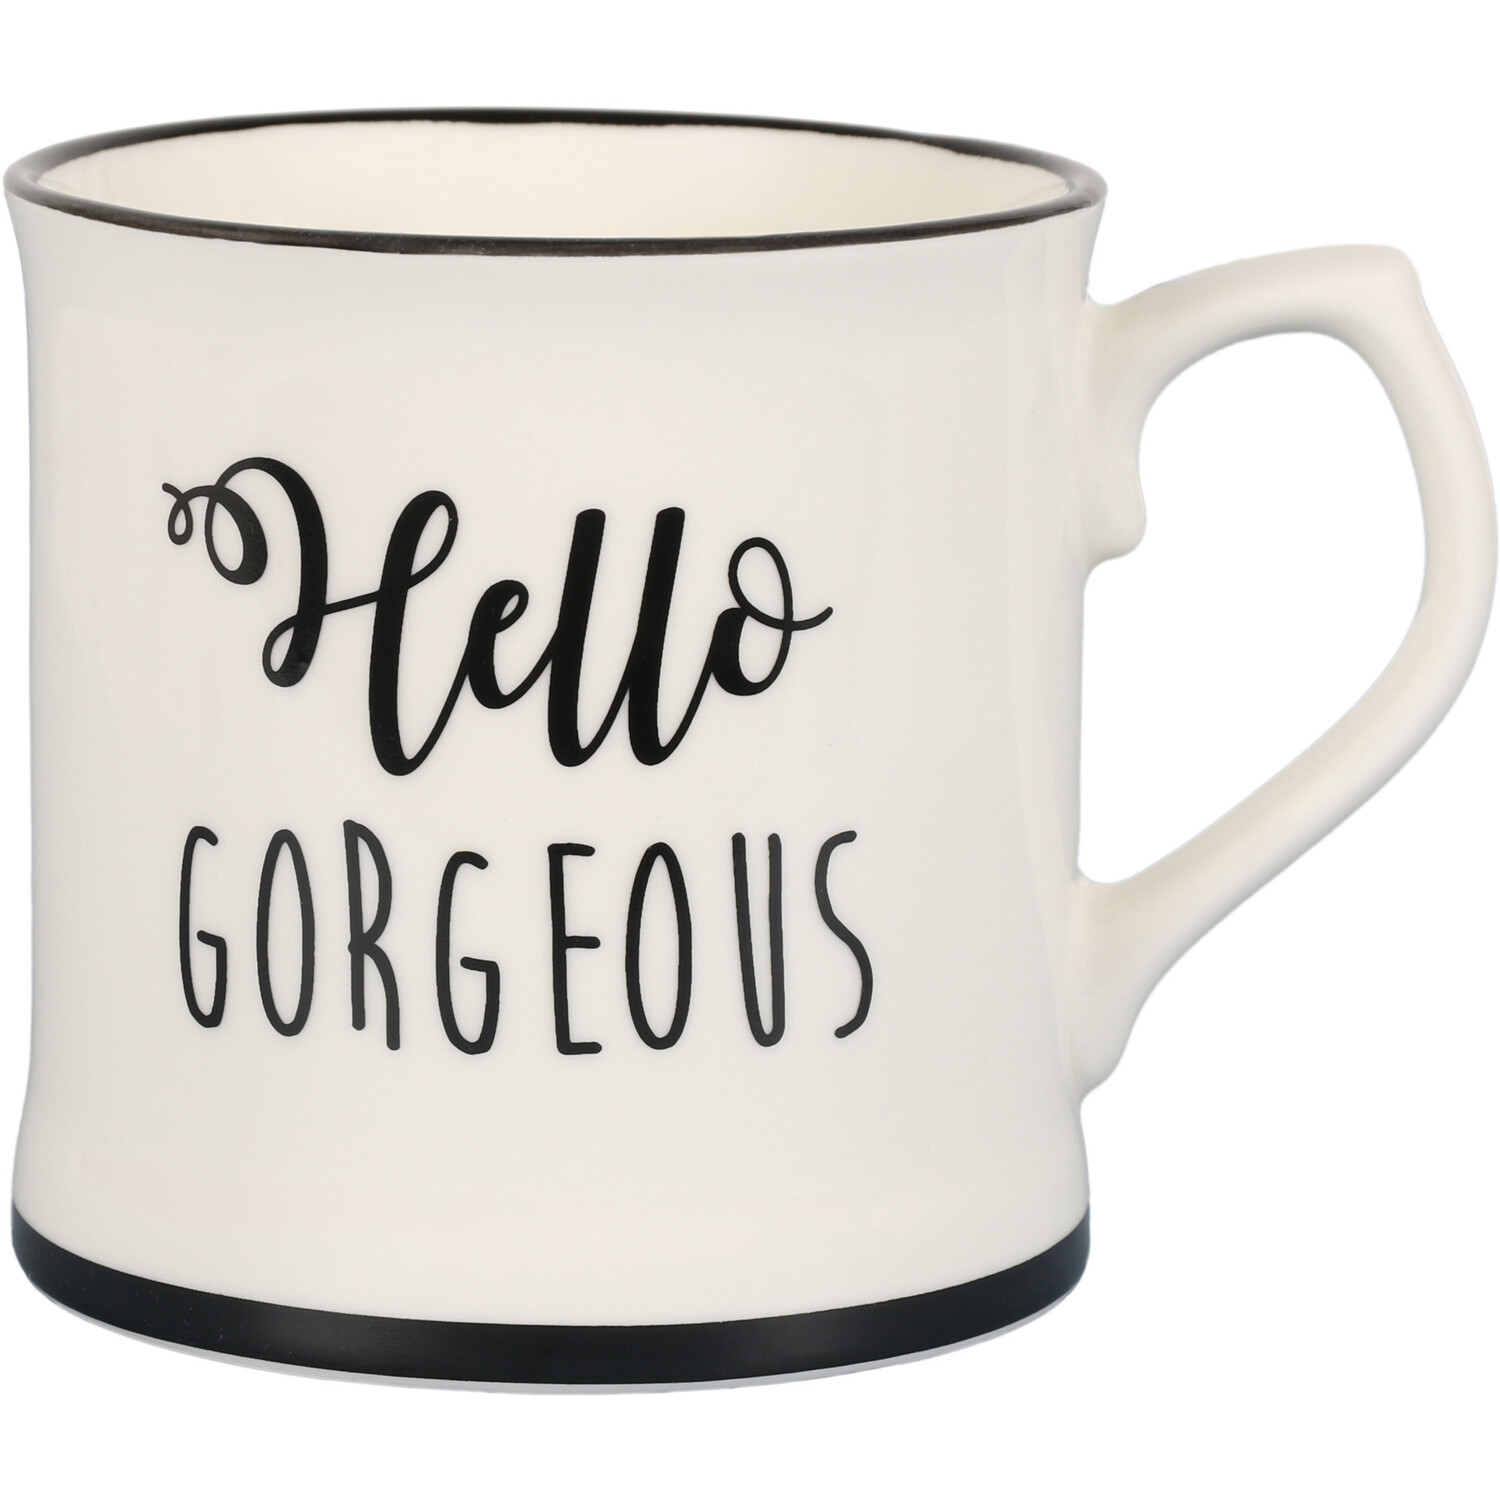 Hello Gorgeous Tankard Mug - White Image 1